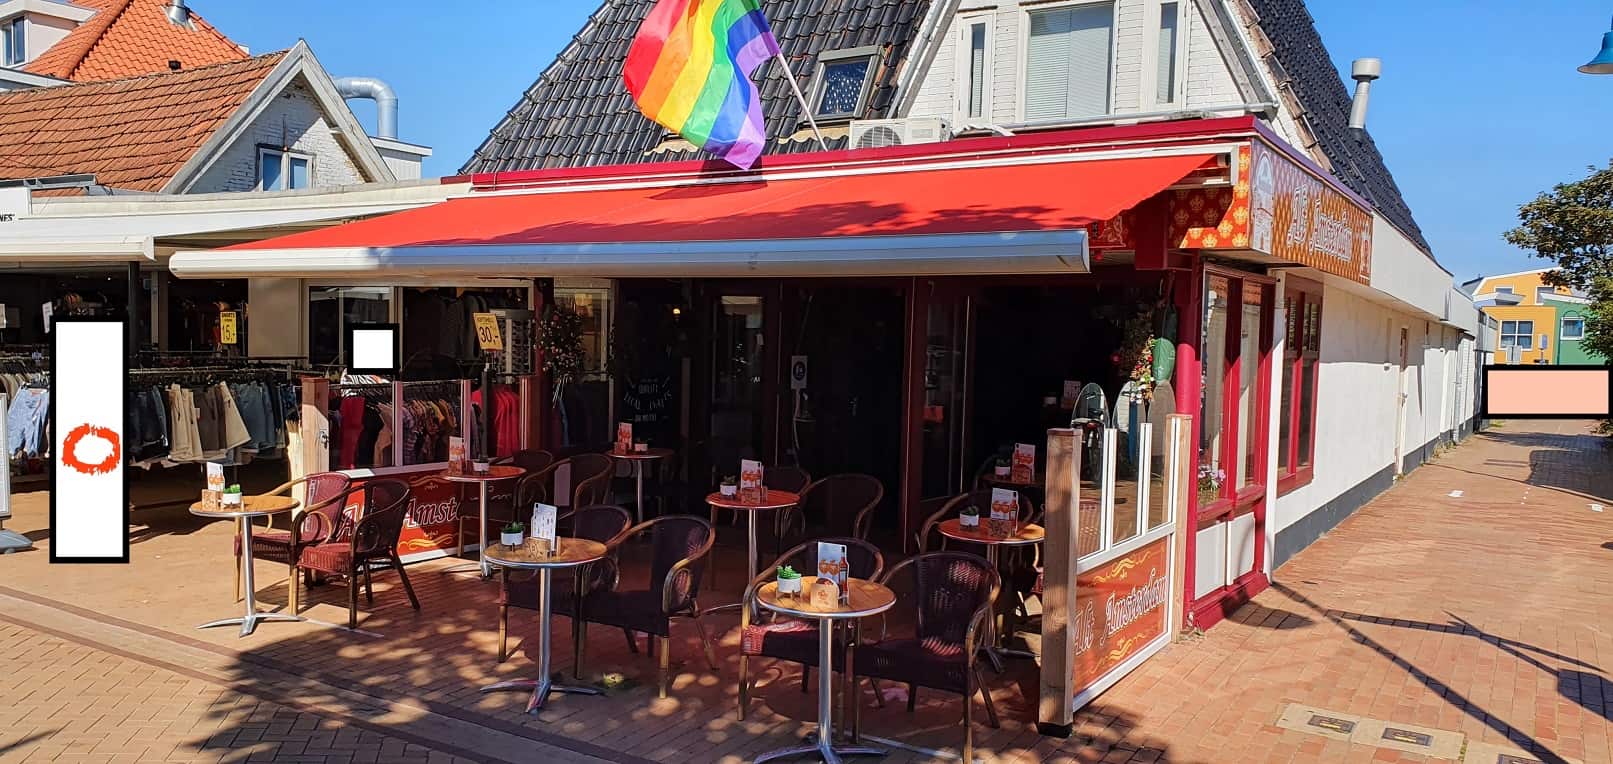 Café met verblijfsruimte op A1 locatie in de Koog op Texel